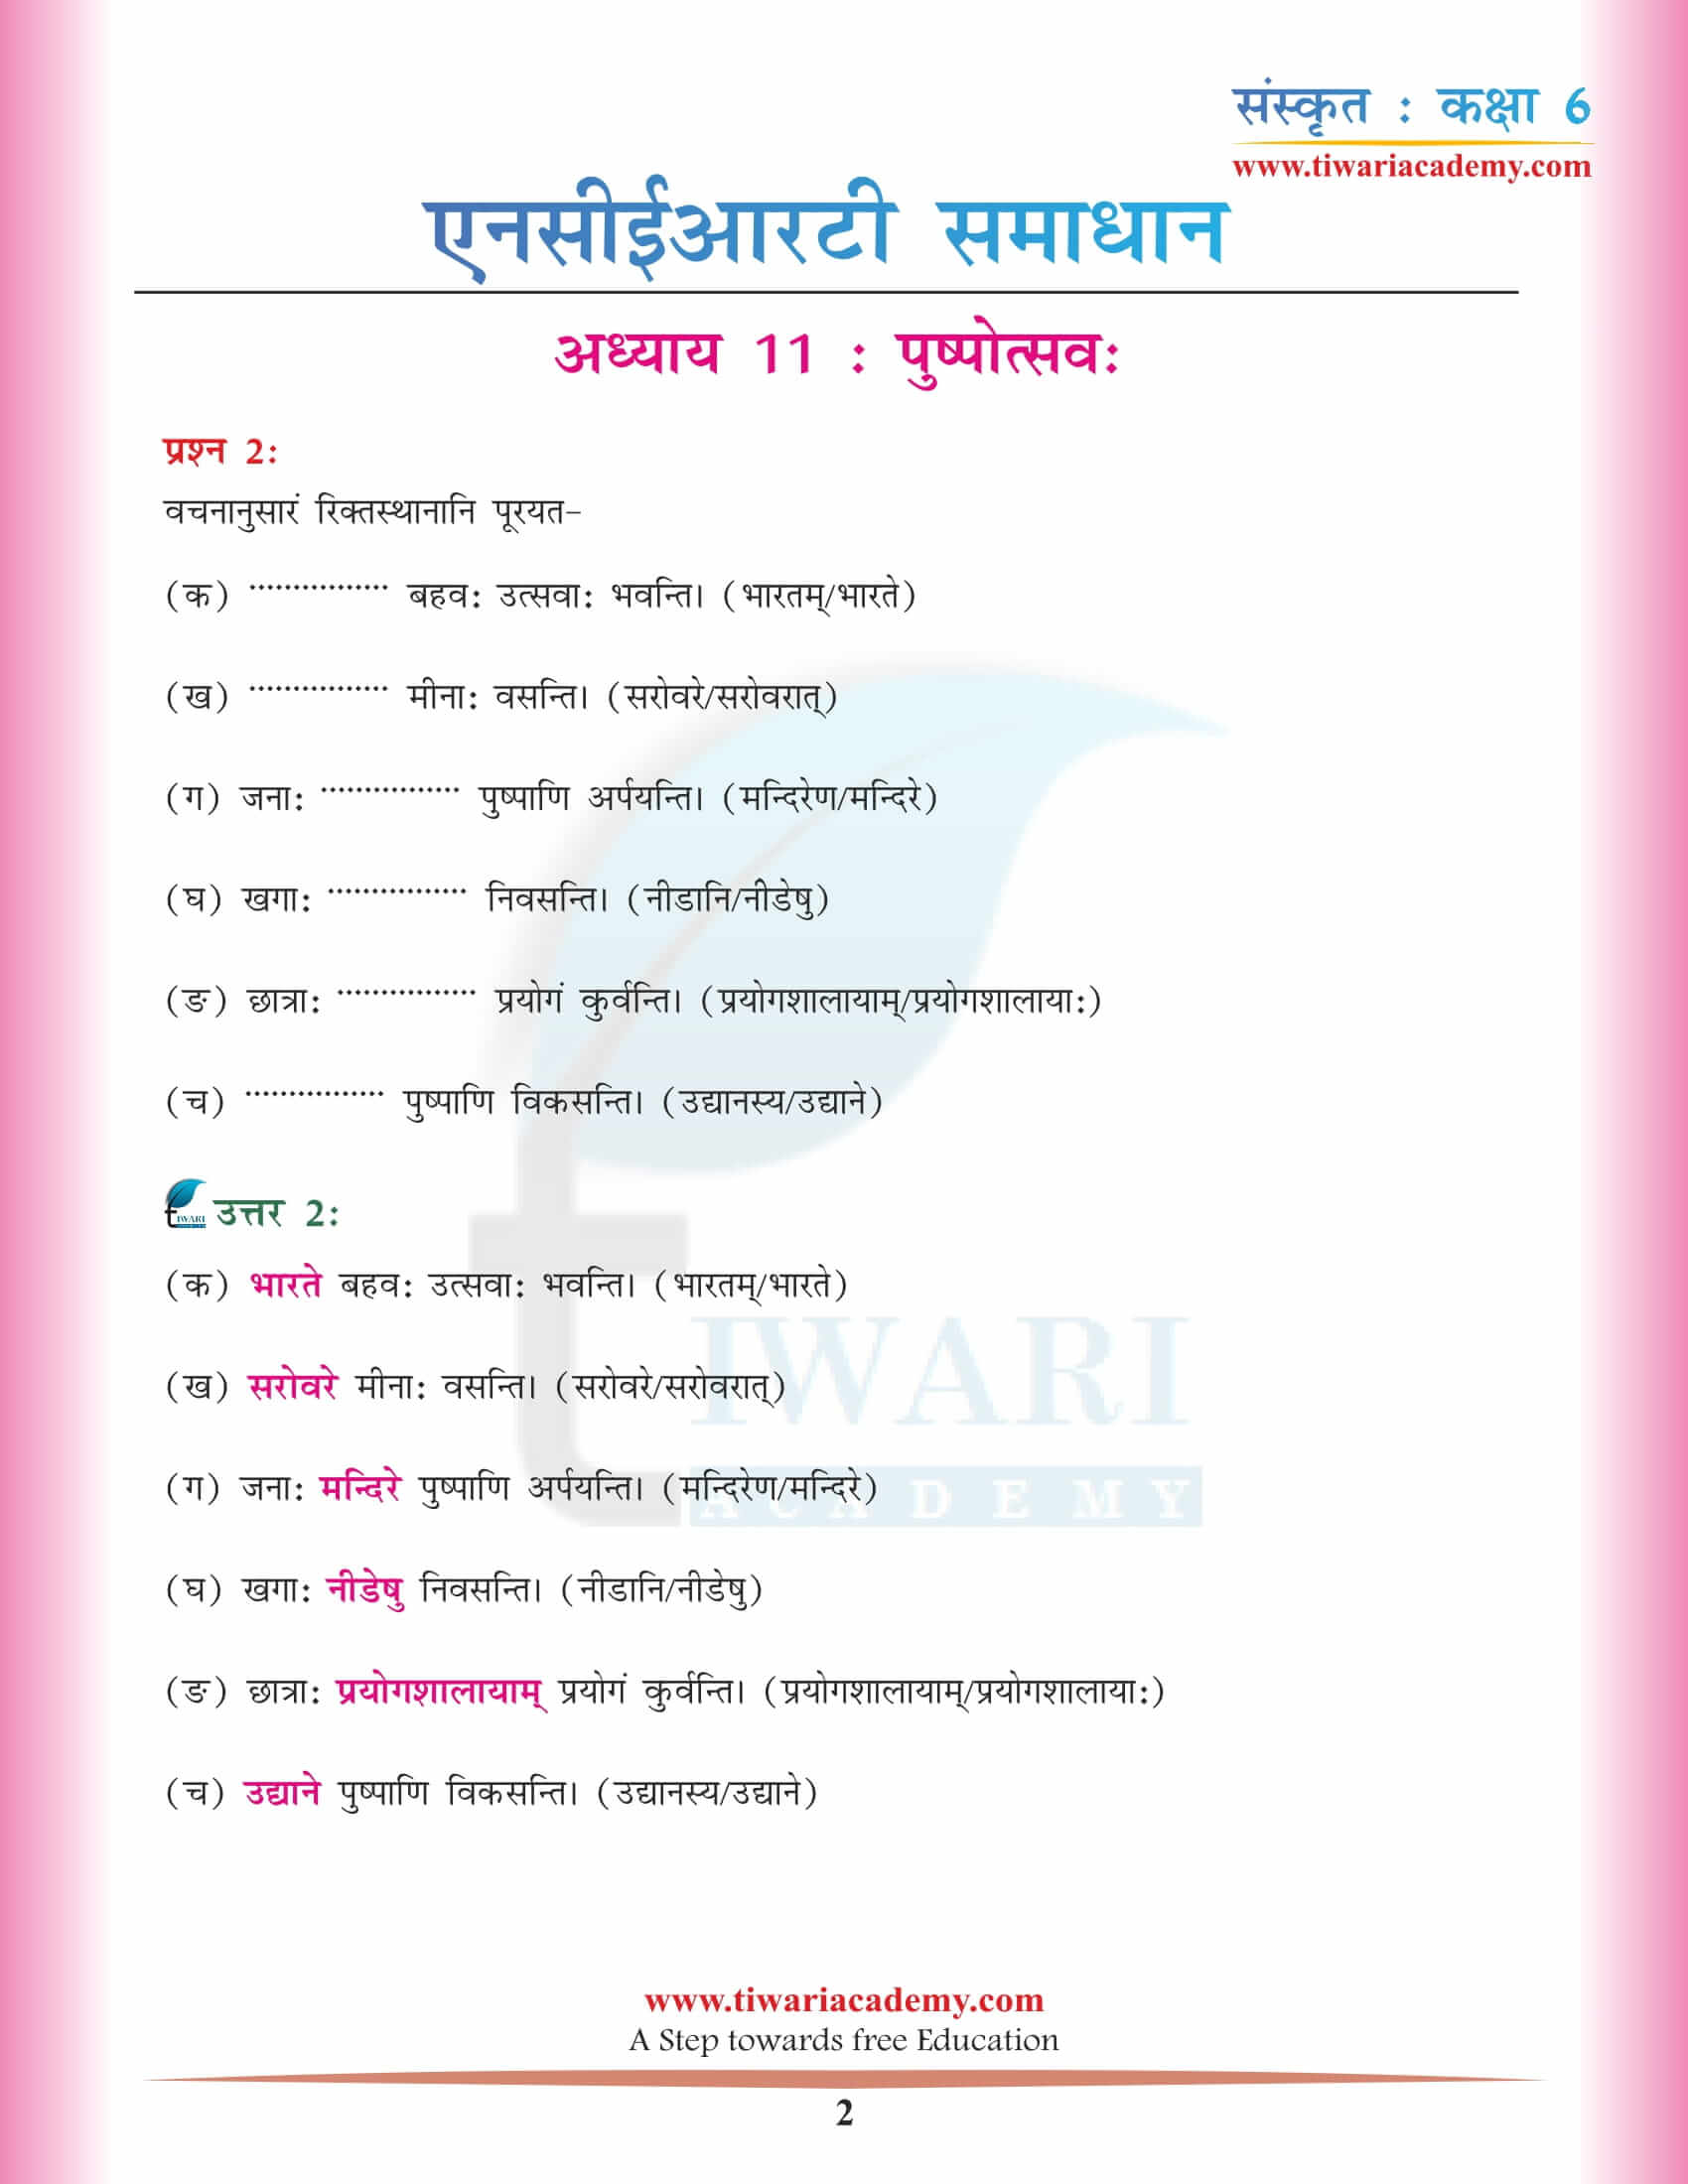 एनसीईआरटी समाधान कक्षा 6 संस्कृत अध्याय 11 हिंदी में